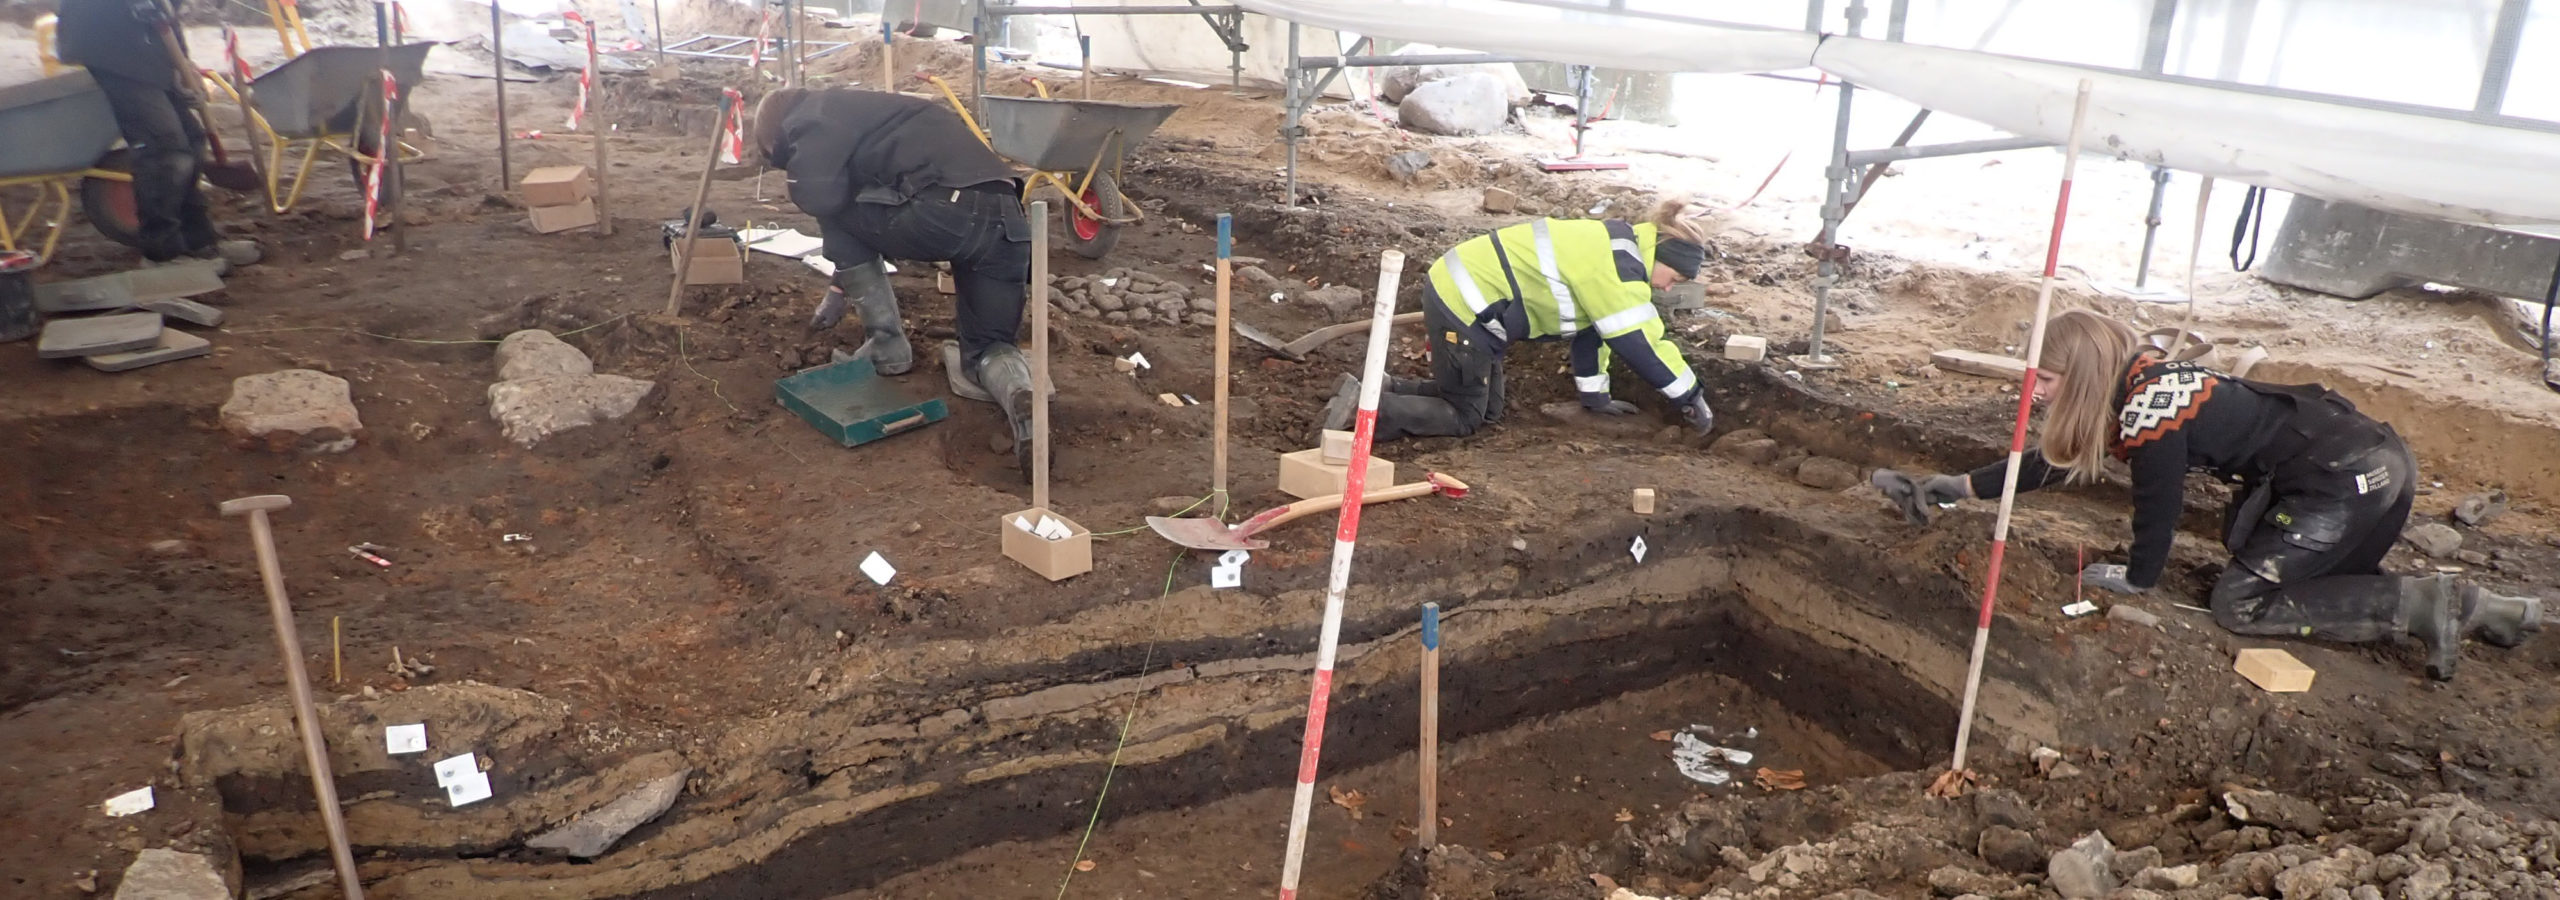 FOREDRAG: Udgravningen i Perlegade og Sønderborgs historie i middelalderen